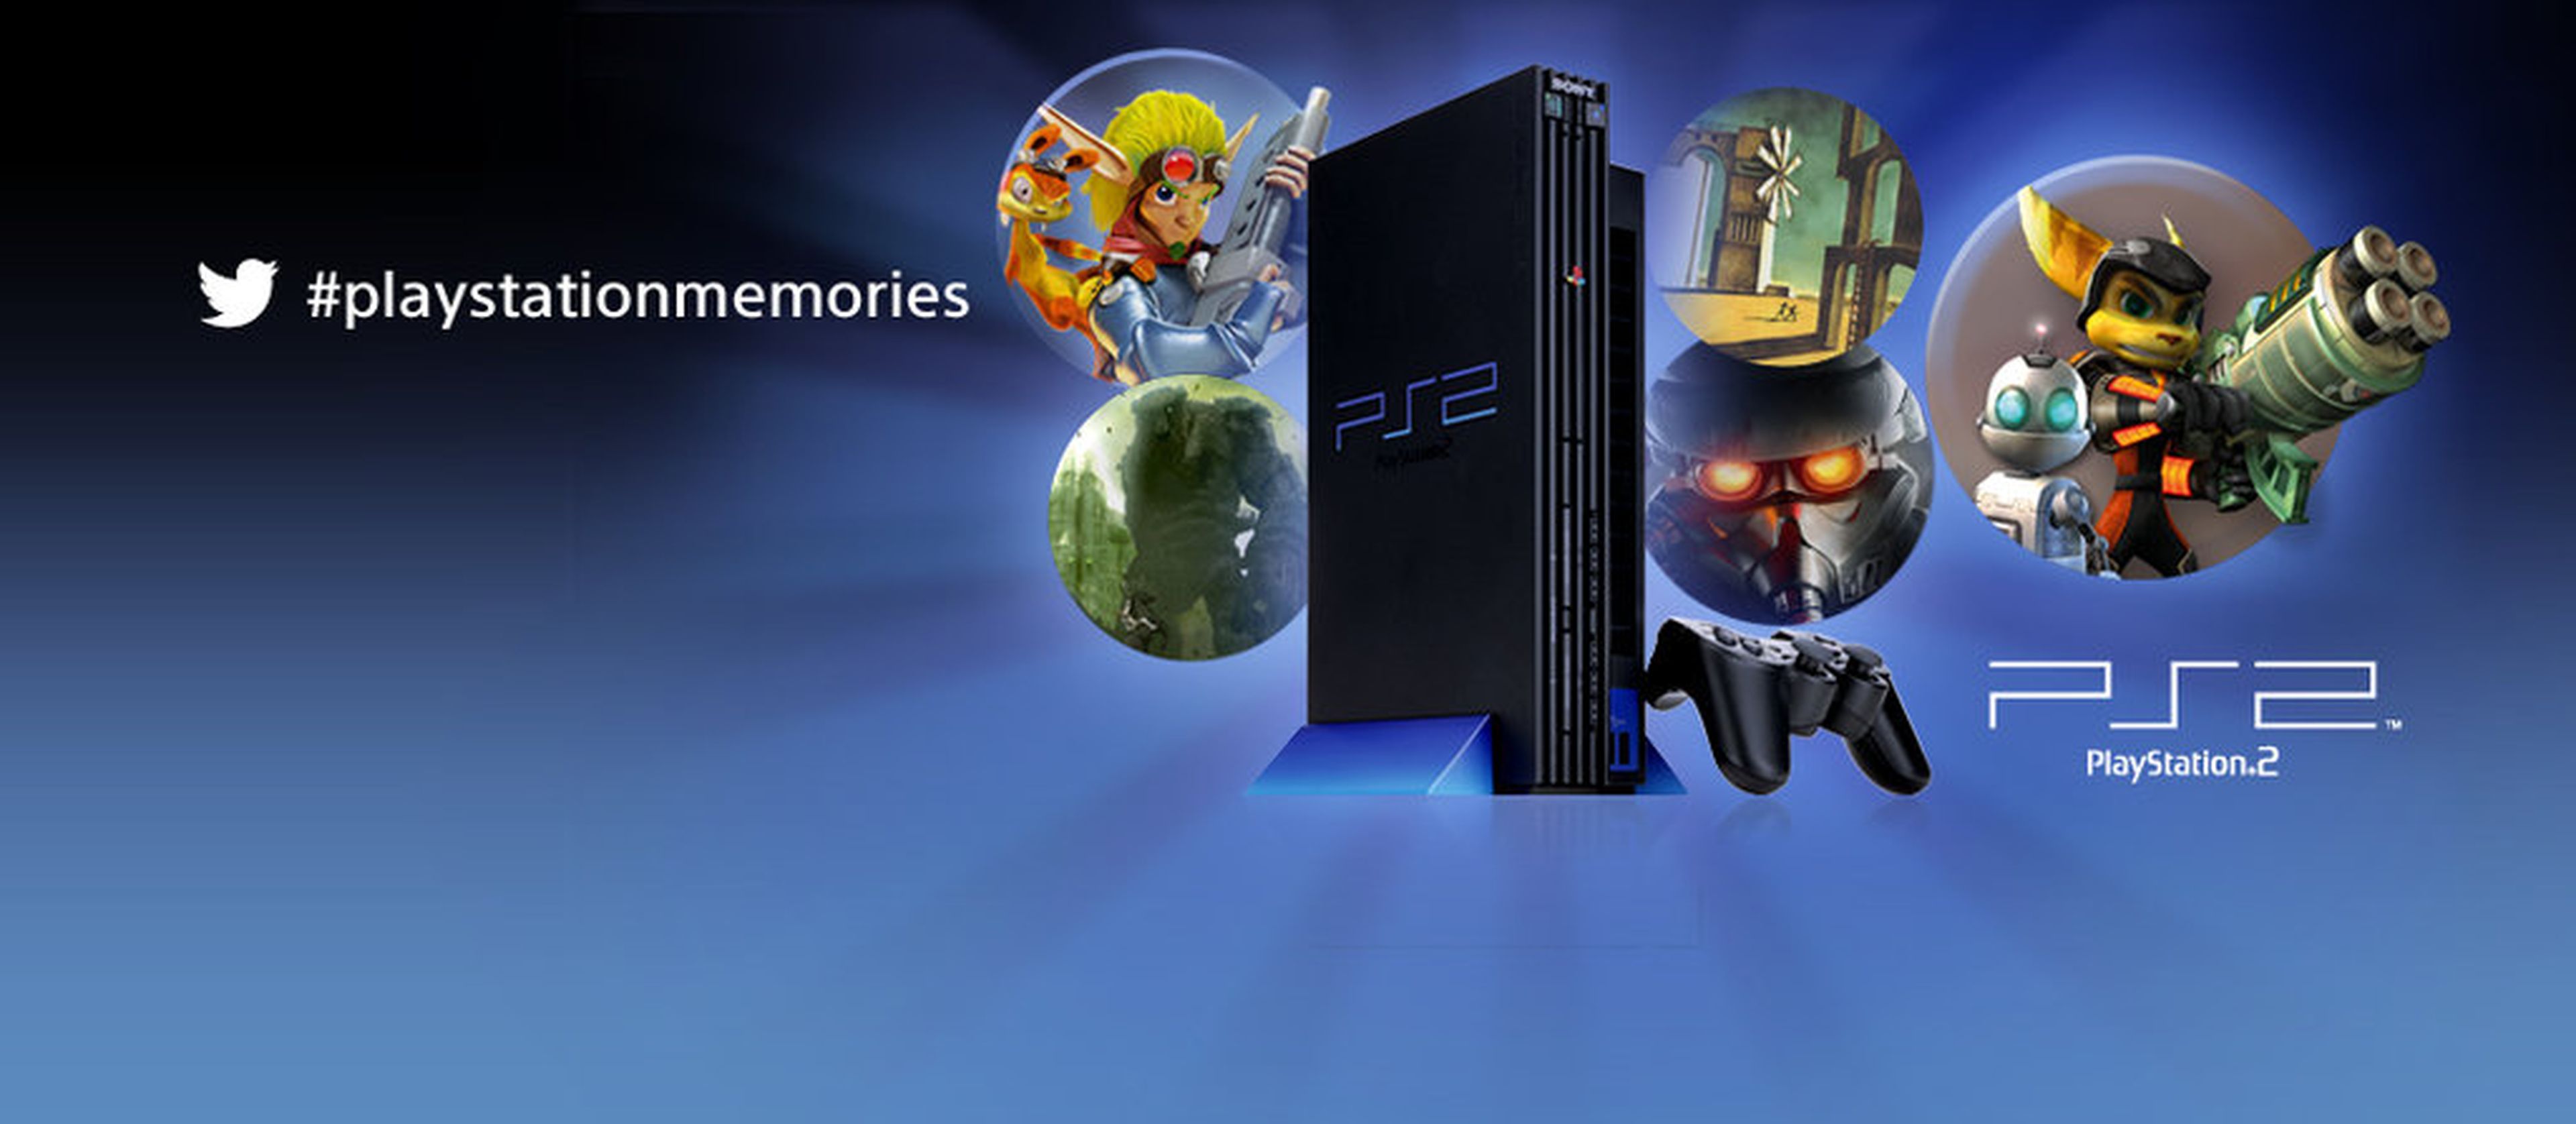 Las memorias de PlayStation 2